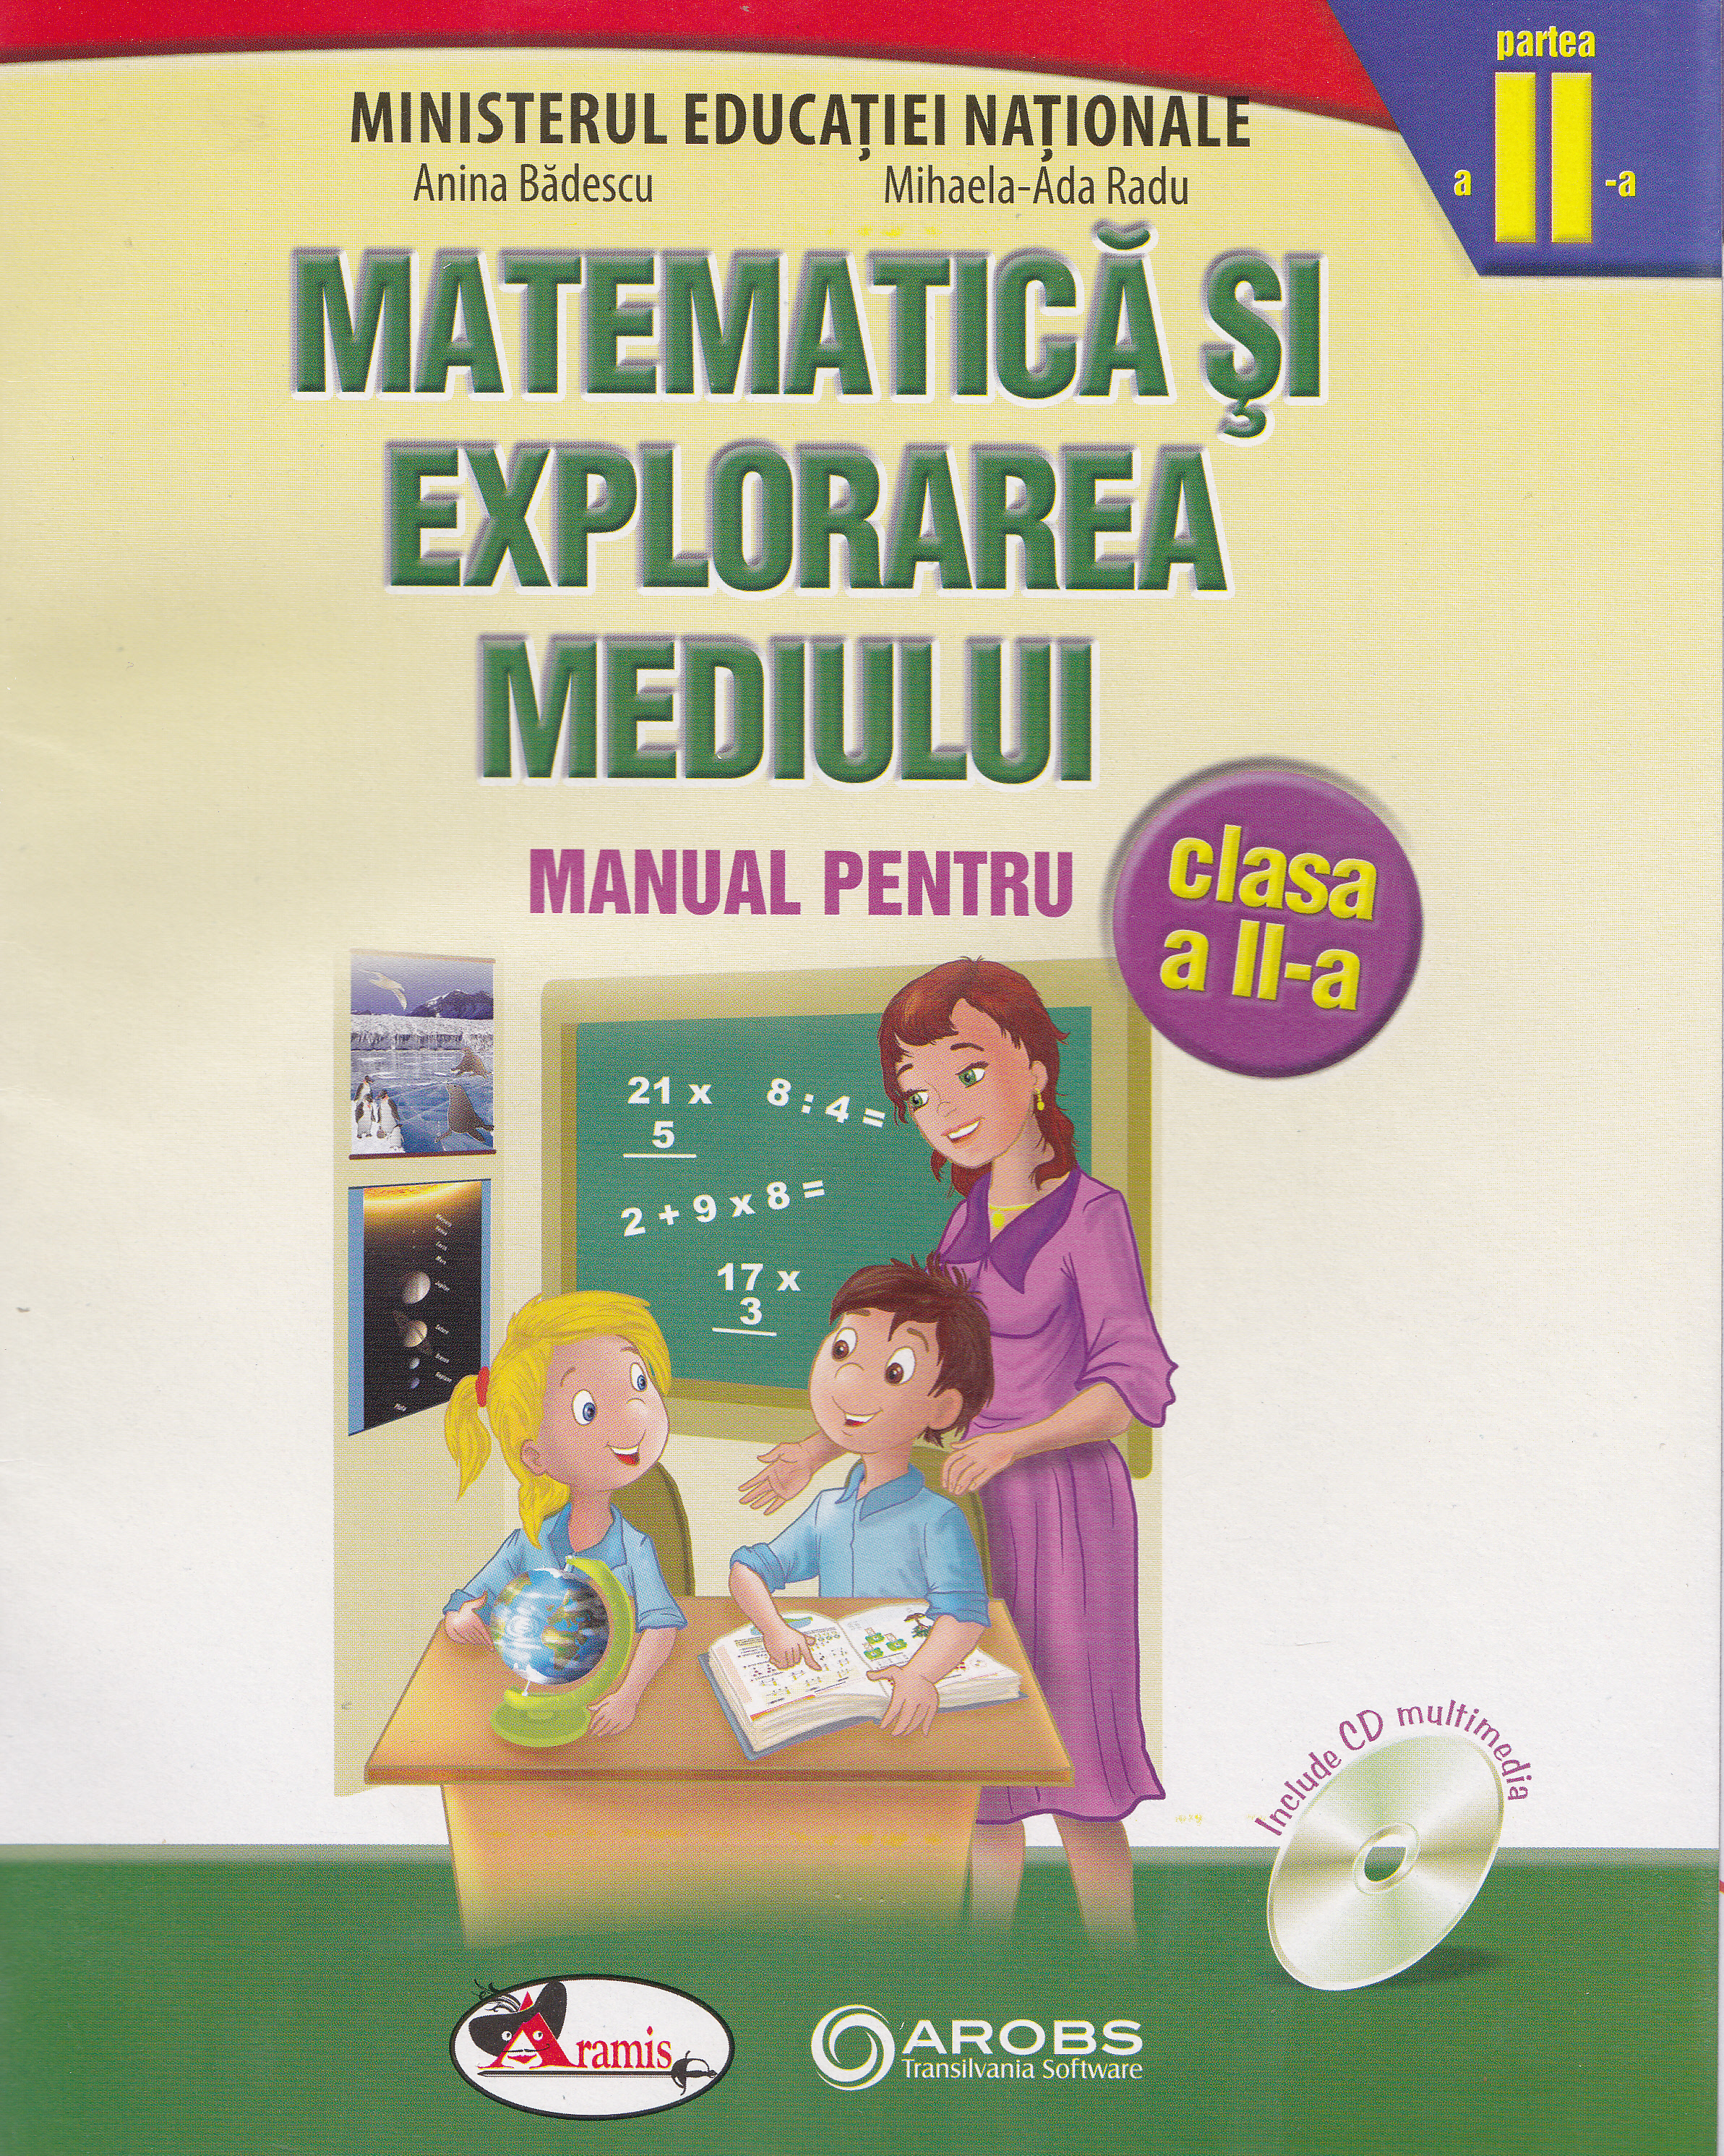 Matematica si explorarea mediului - Clasa 2 - Manual - Partea I + Partea II - Anina Badescu, Mihaela-Ana Radu